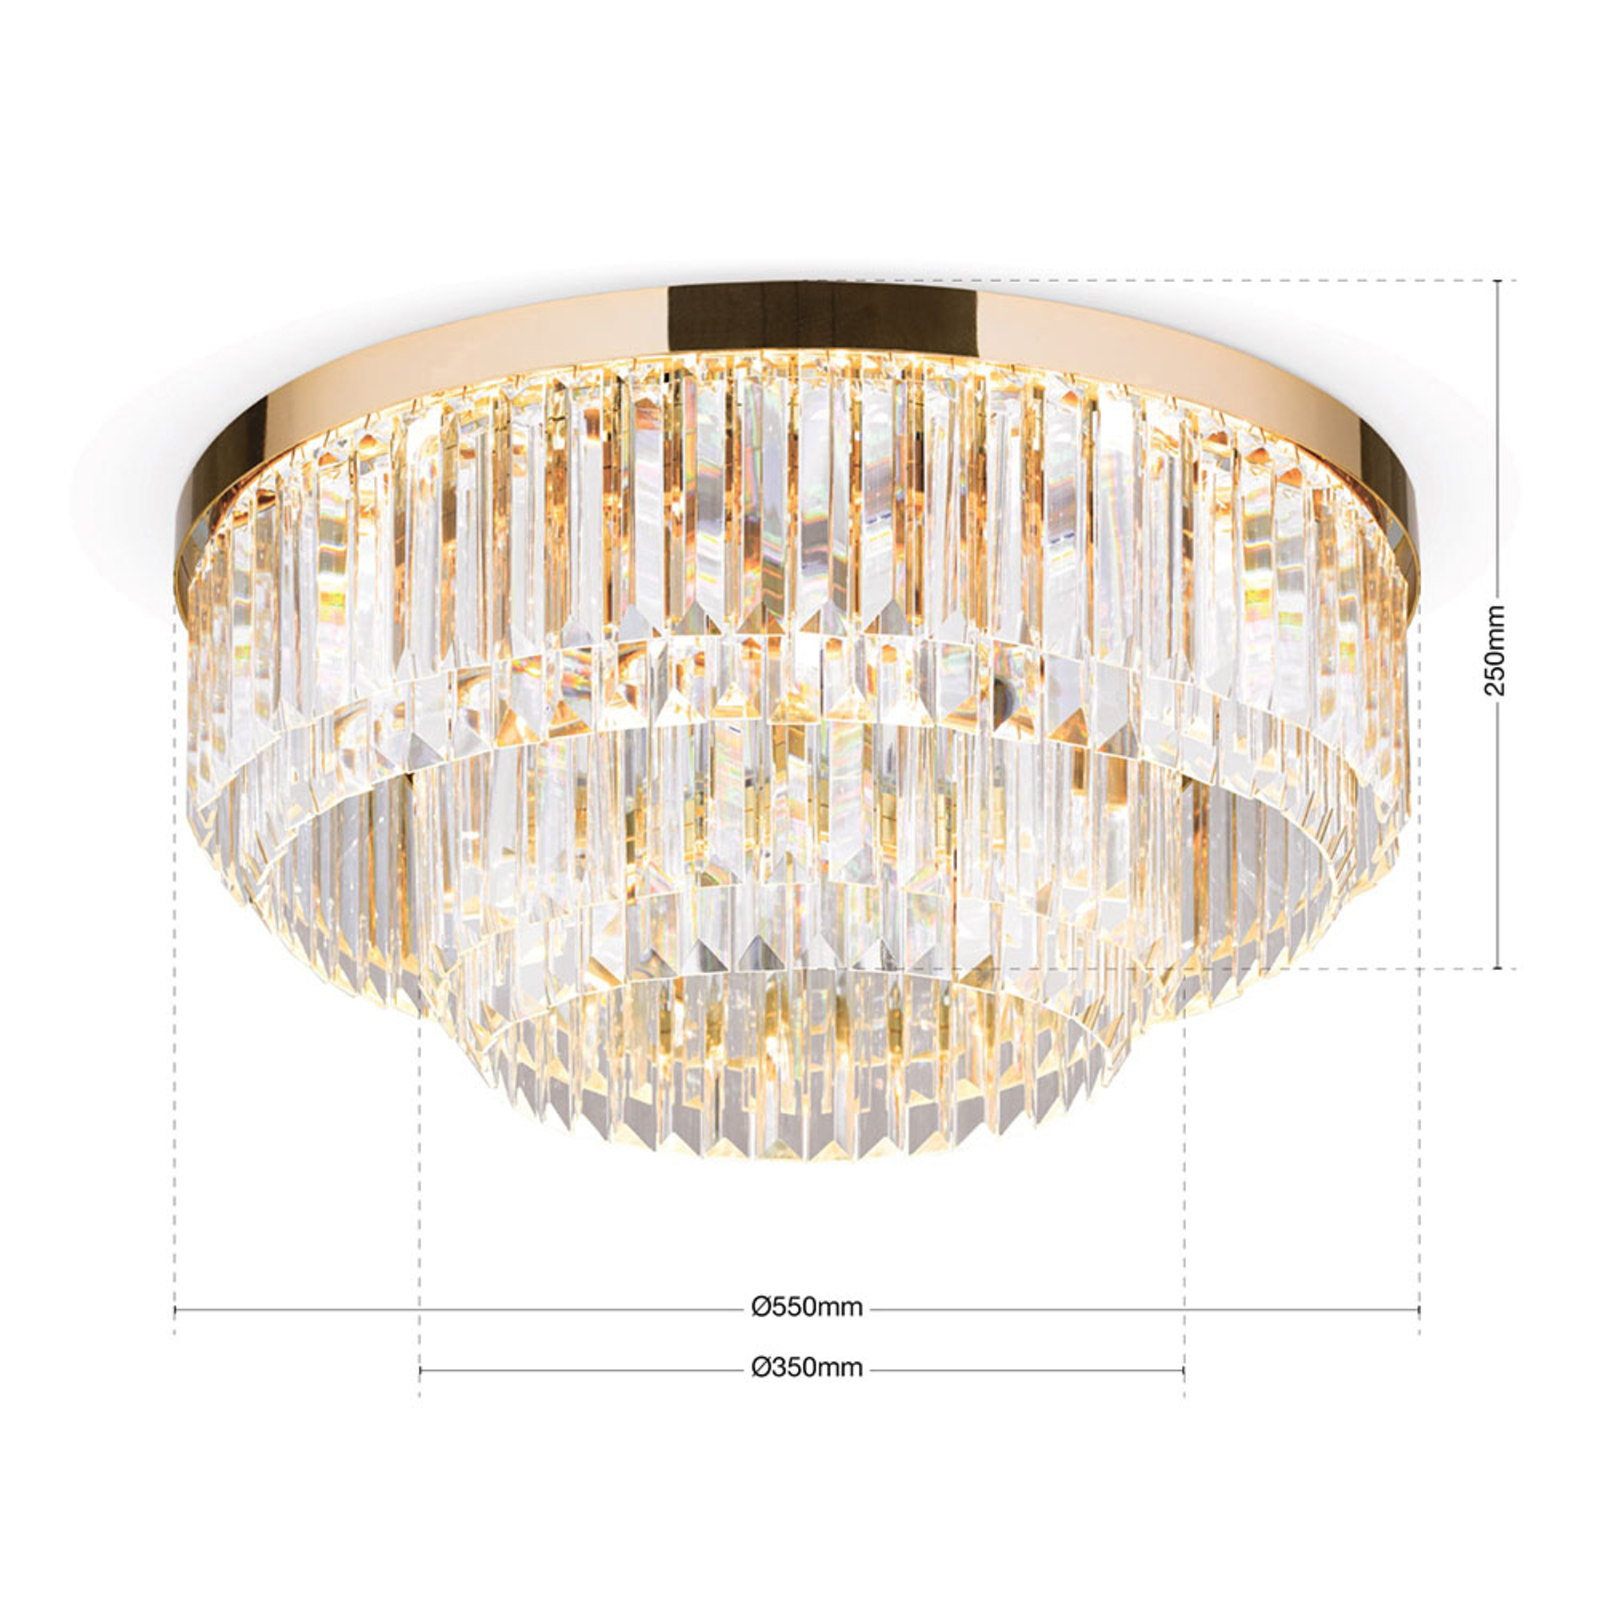 Stropné LED svietidlo Prism, zlaté, Ø 55 cm